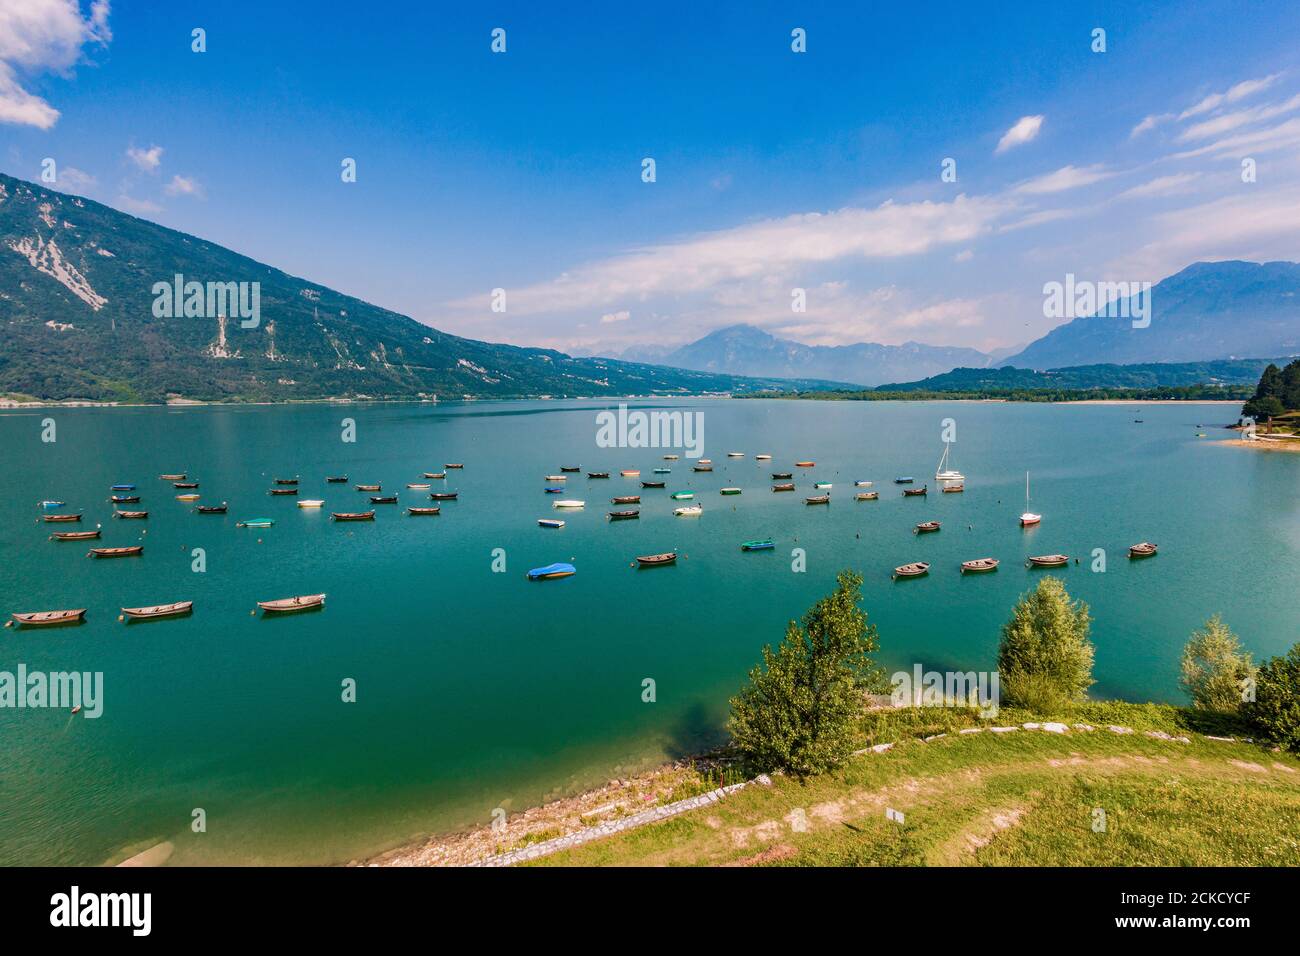 Lago santa croce immagini e fotografie stock ad alta risoluzione - Alamy